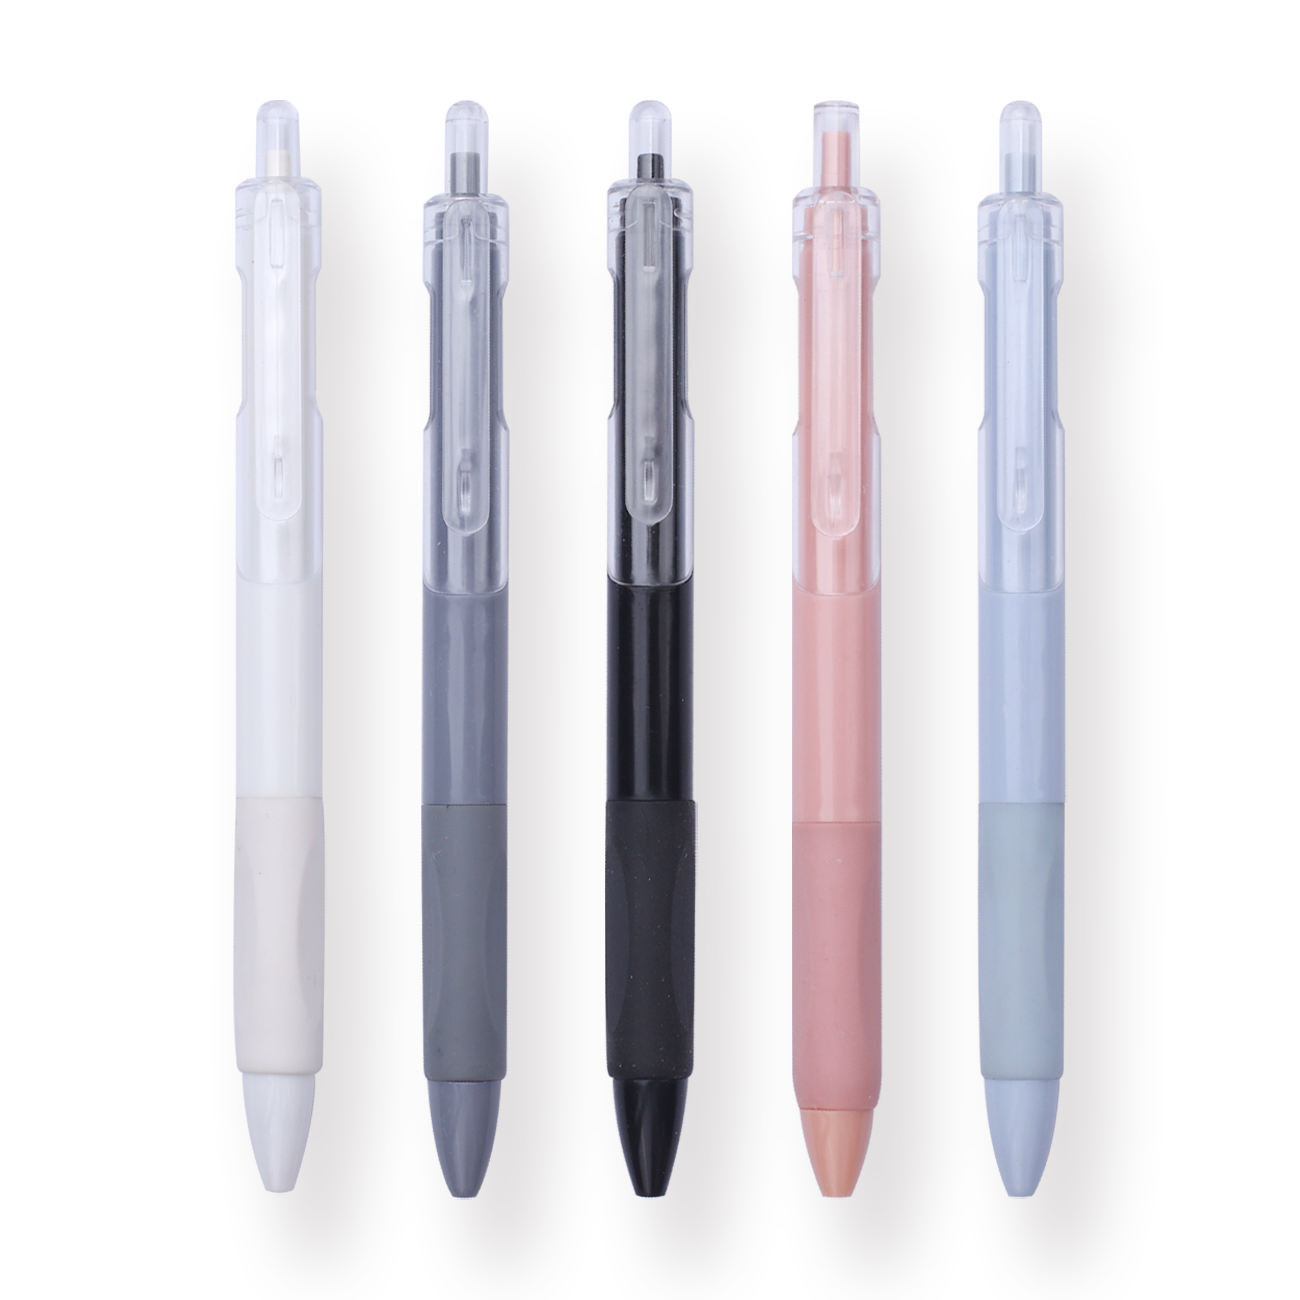 Gel Pen - Set of 5 - 0.5 mm - Colorful Body - Black Ink - Stationery Pal